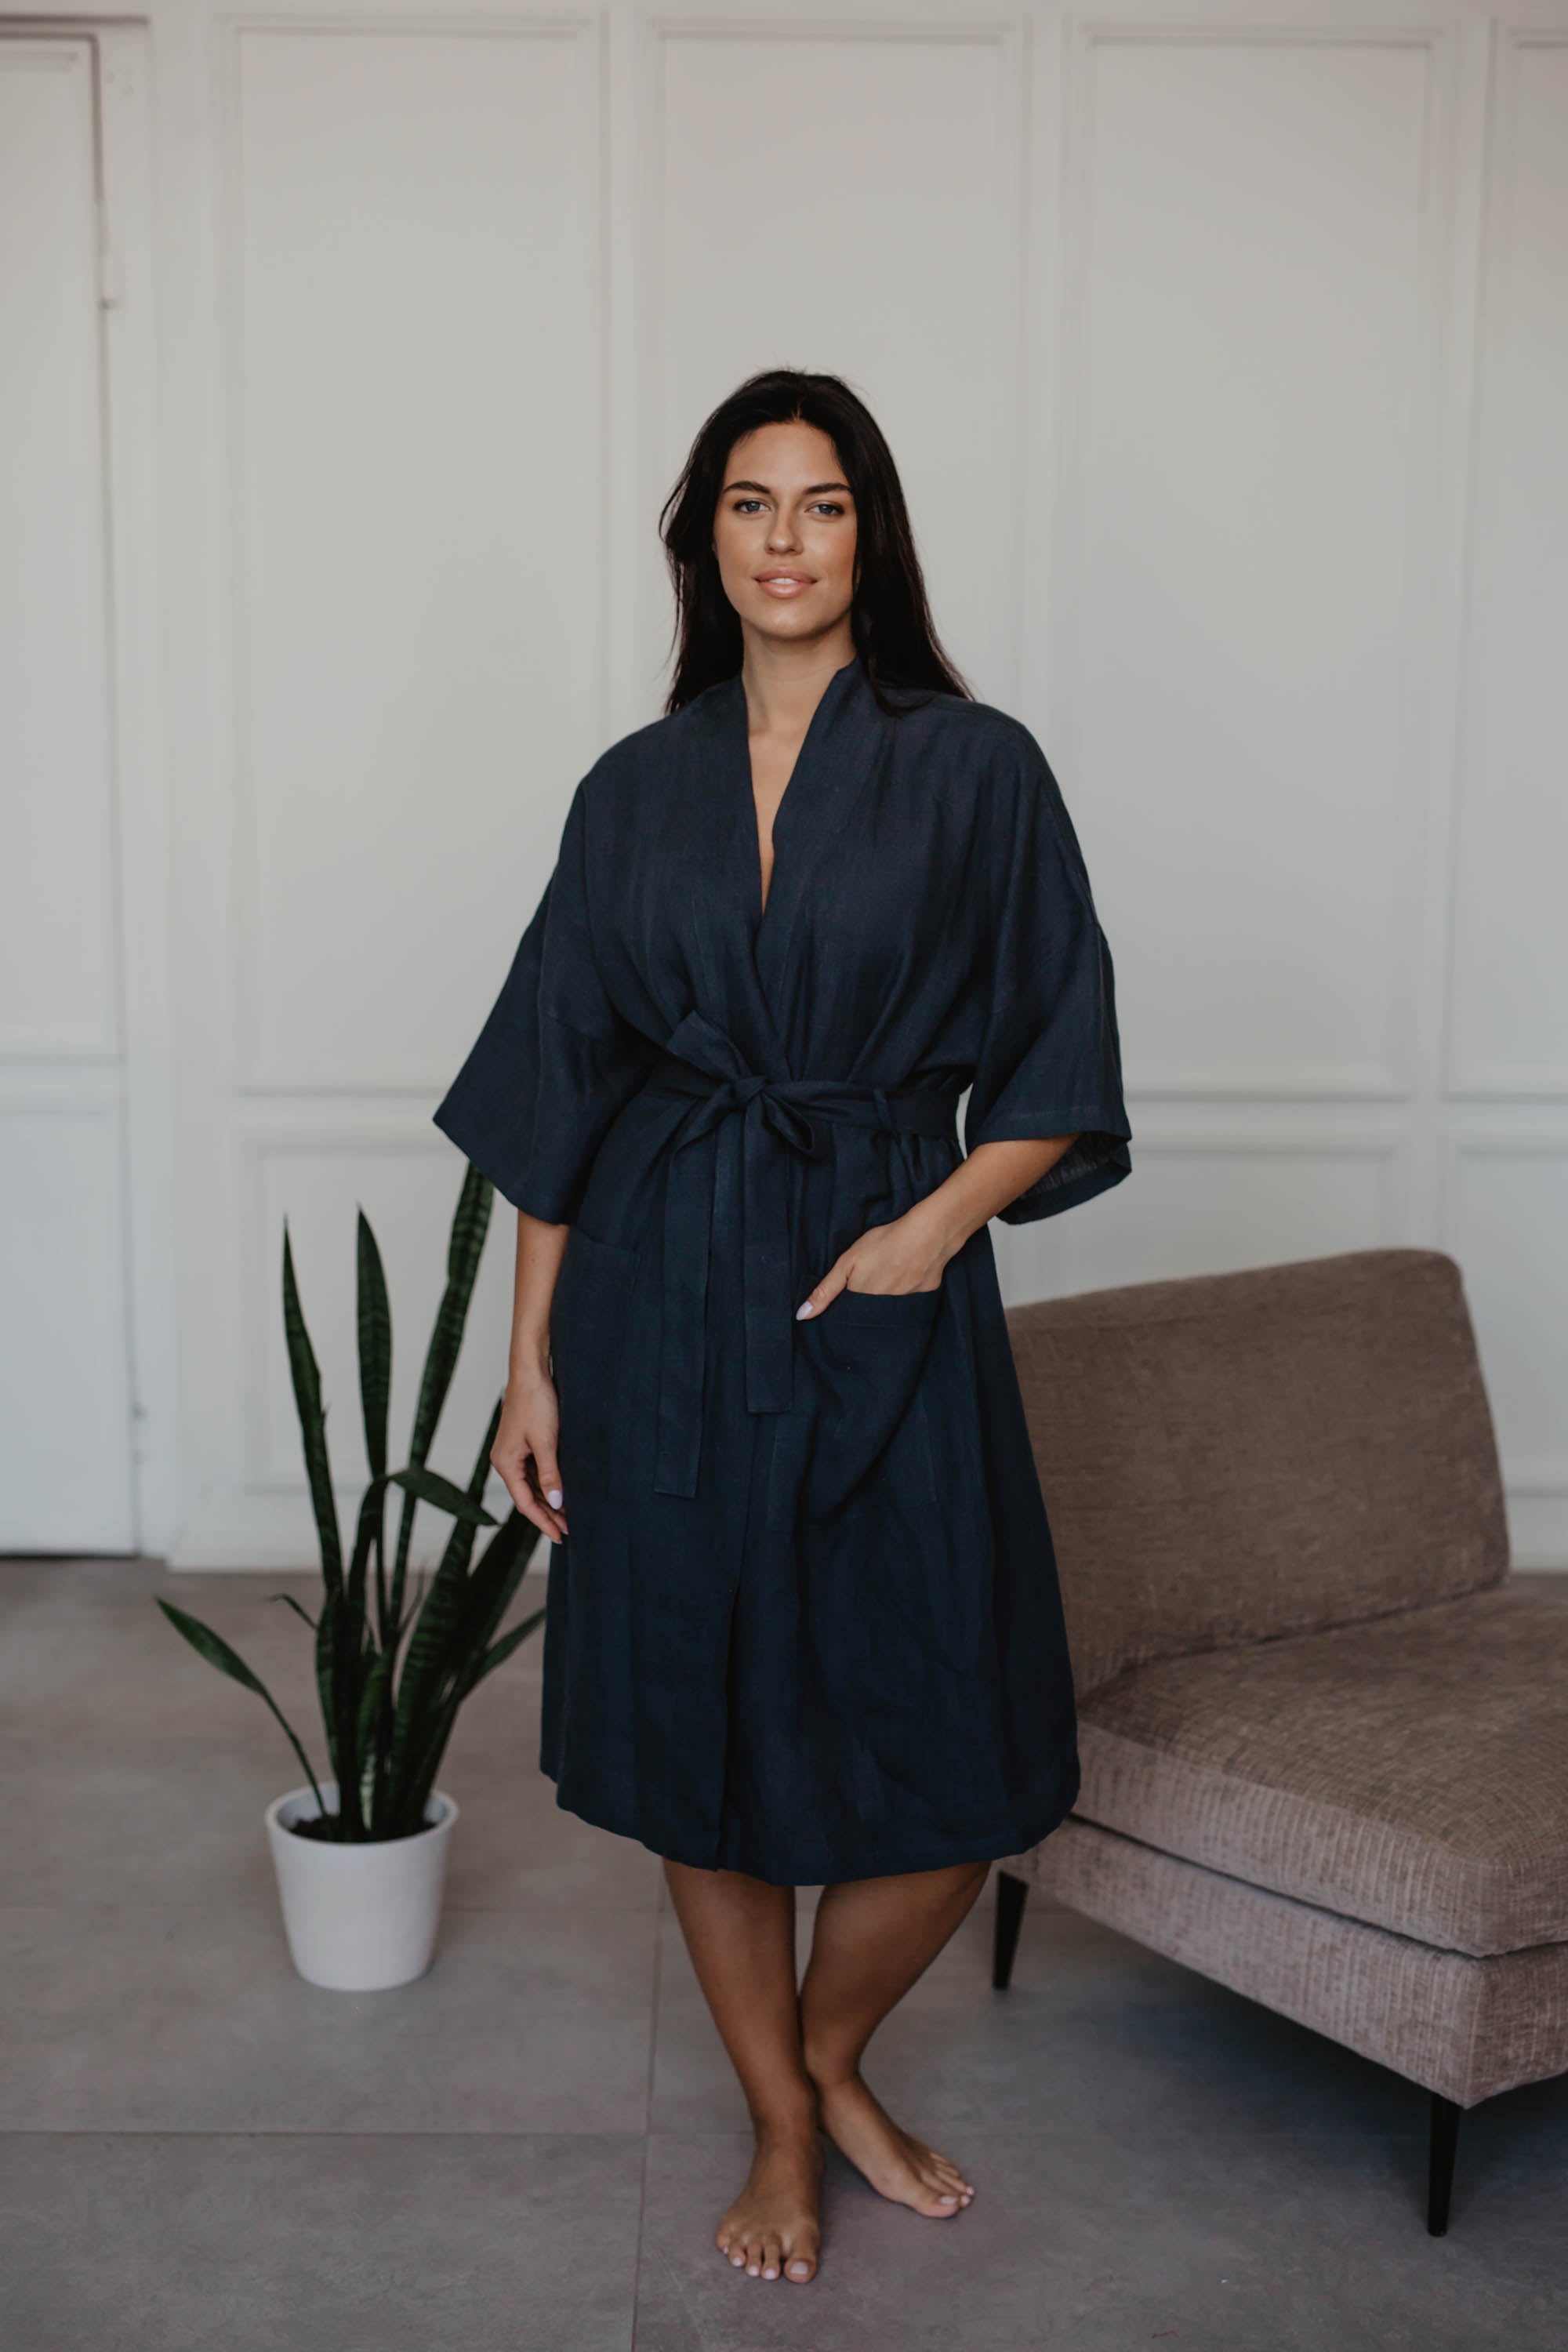 Woman Next To a Sofa Wearing A Dark Linen Bathrobe By AmourLinen